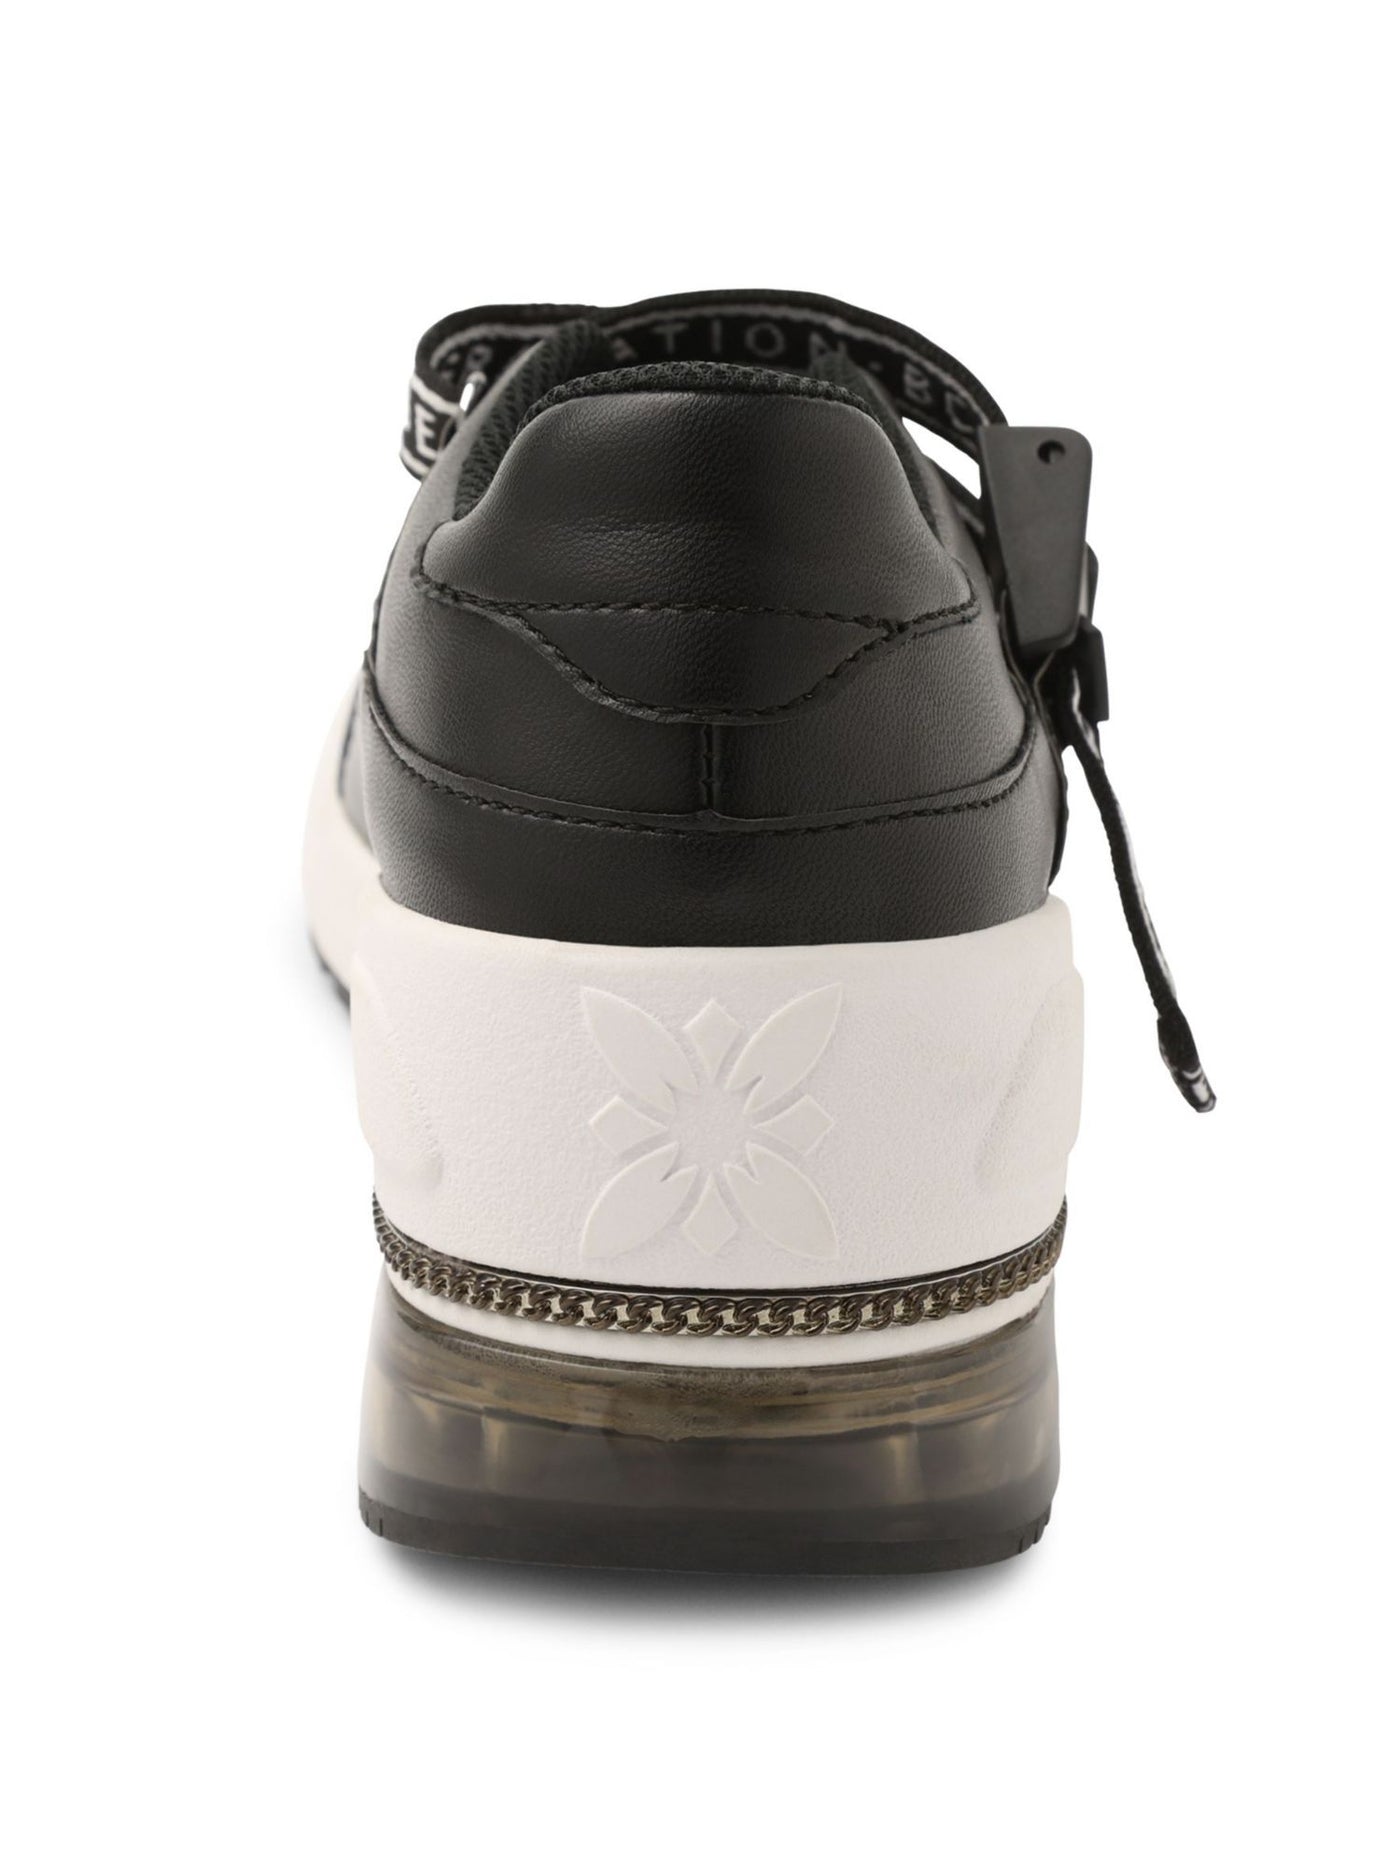 BCBGENERATION Womens Black 1" Platform Chain Hardware Logo Padded Willa Round Toe Wedge Slip On Athletic Training Shoes 8